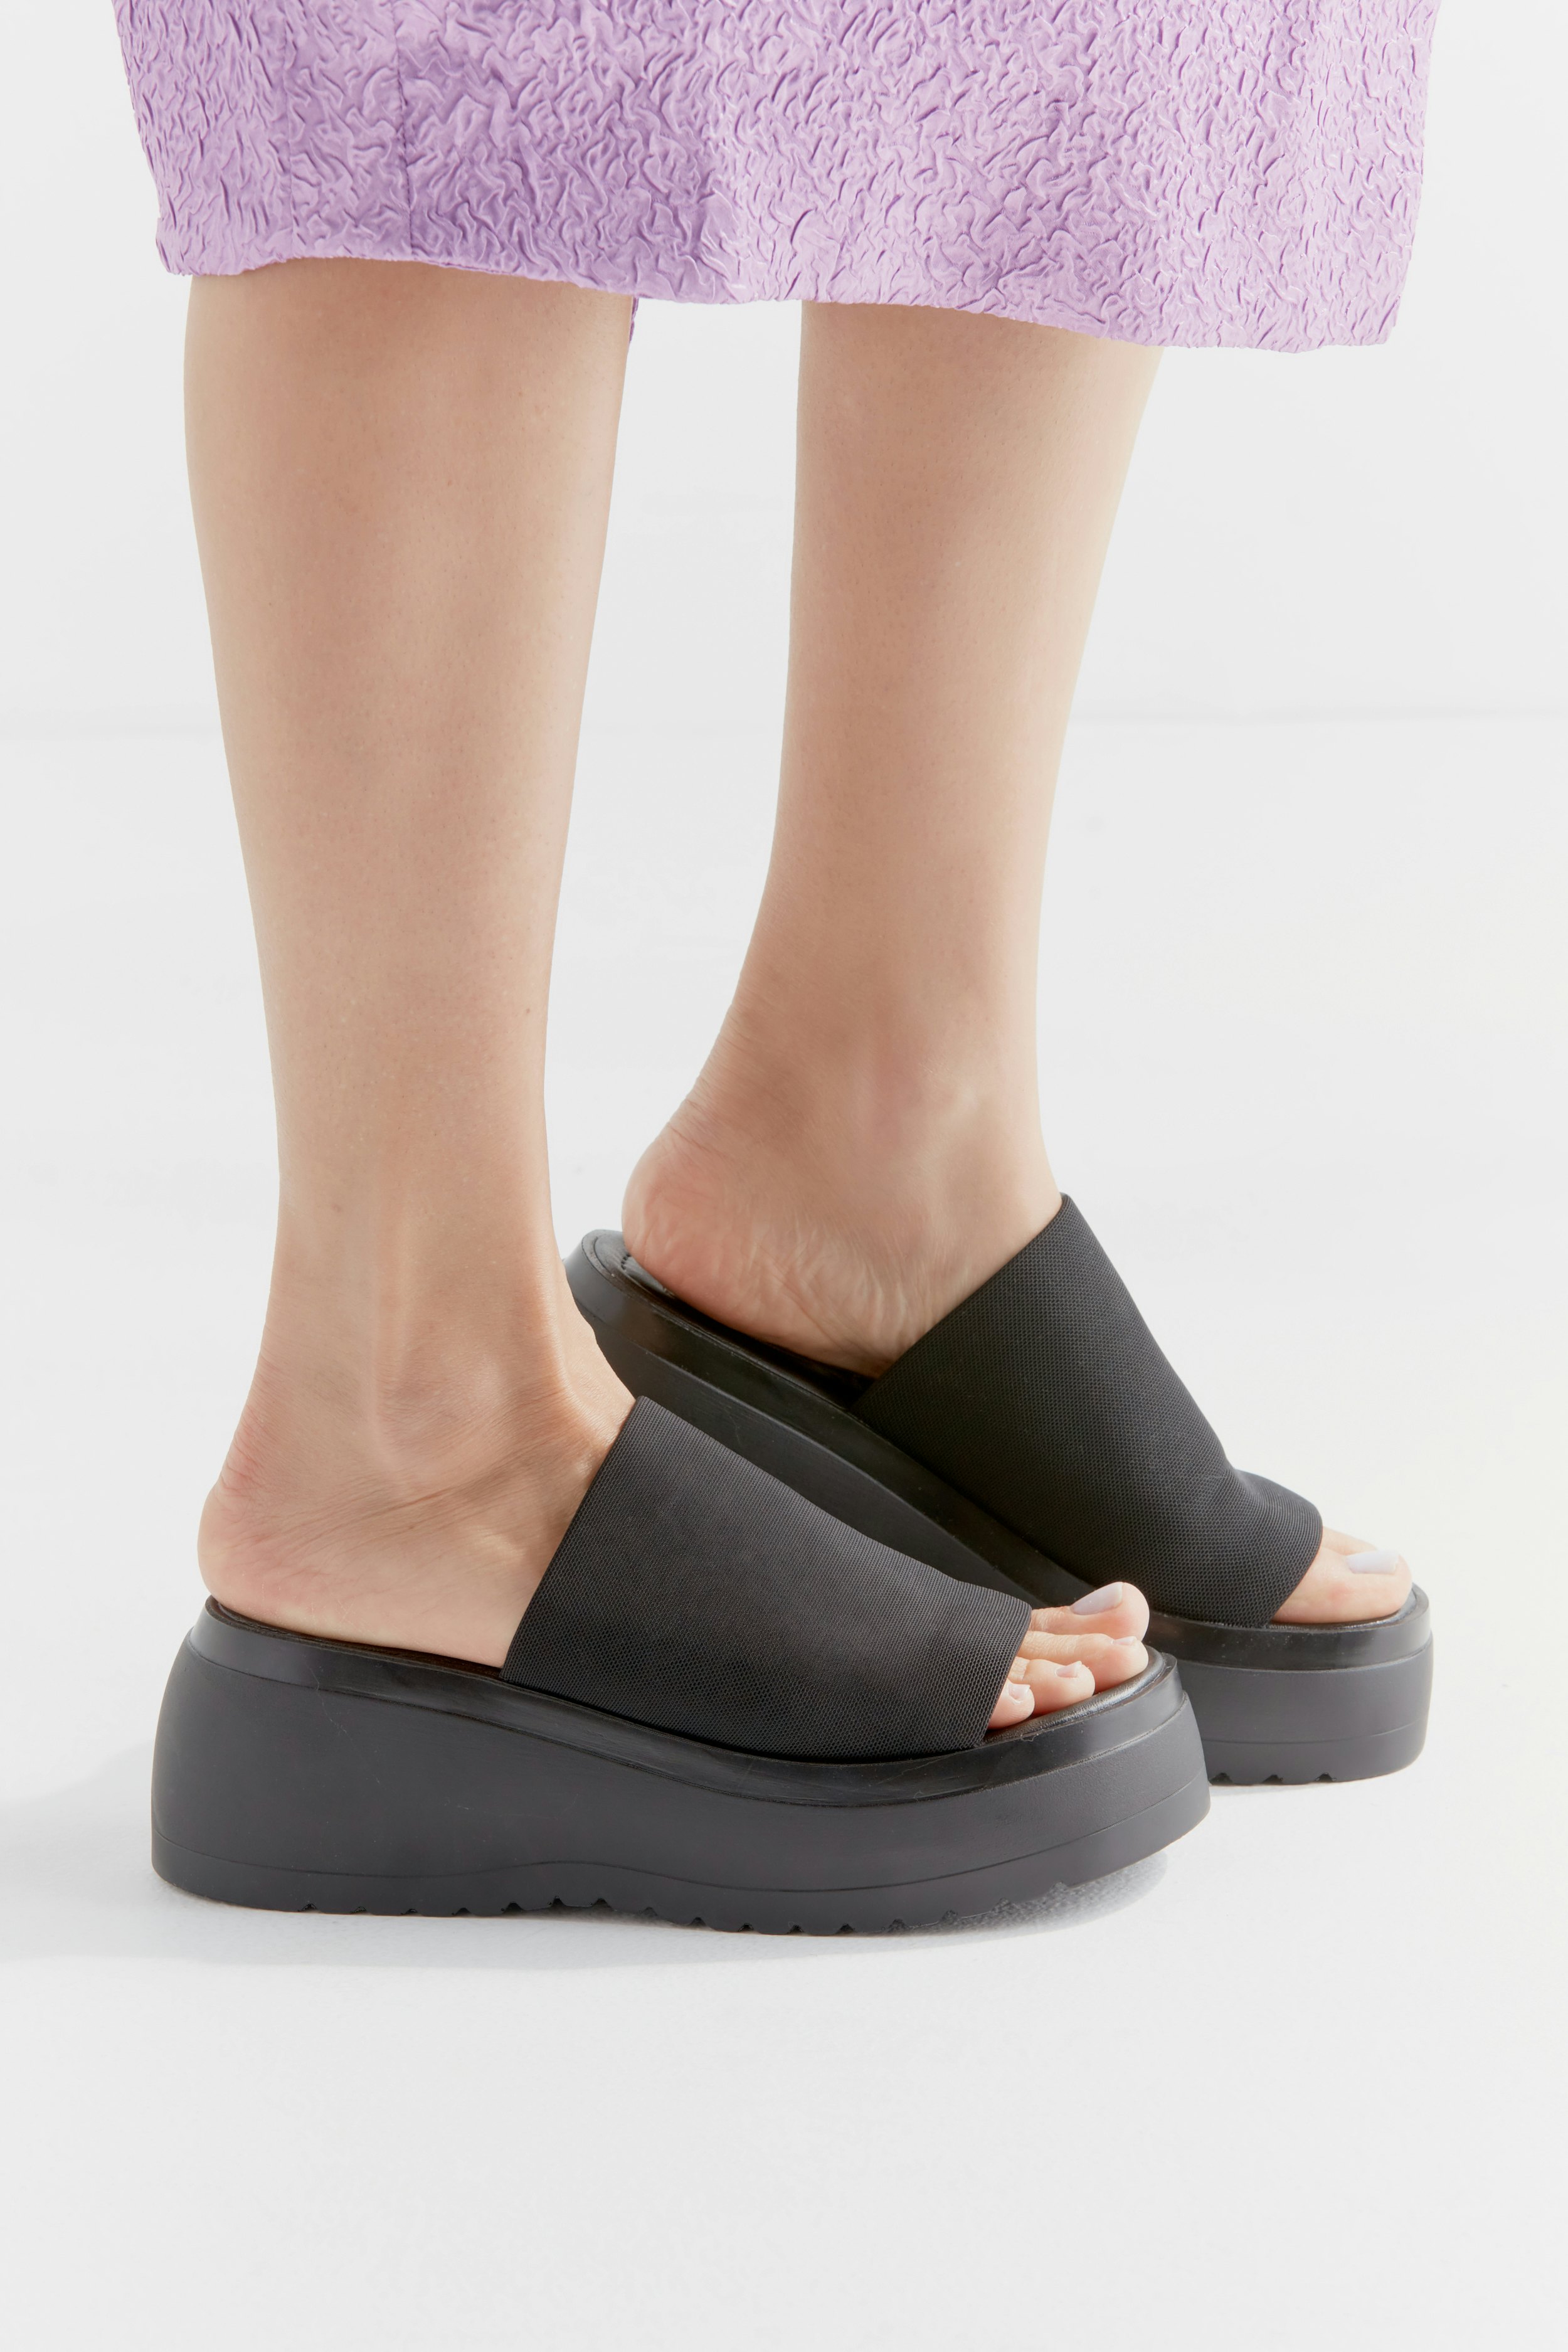 steve madden women's slinky platform sandal